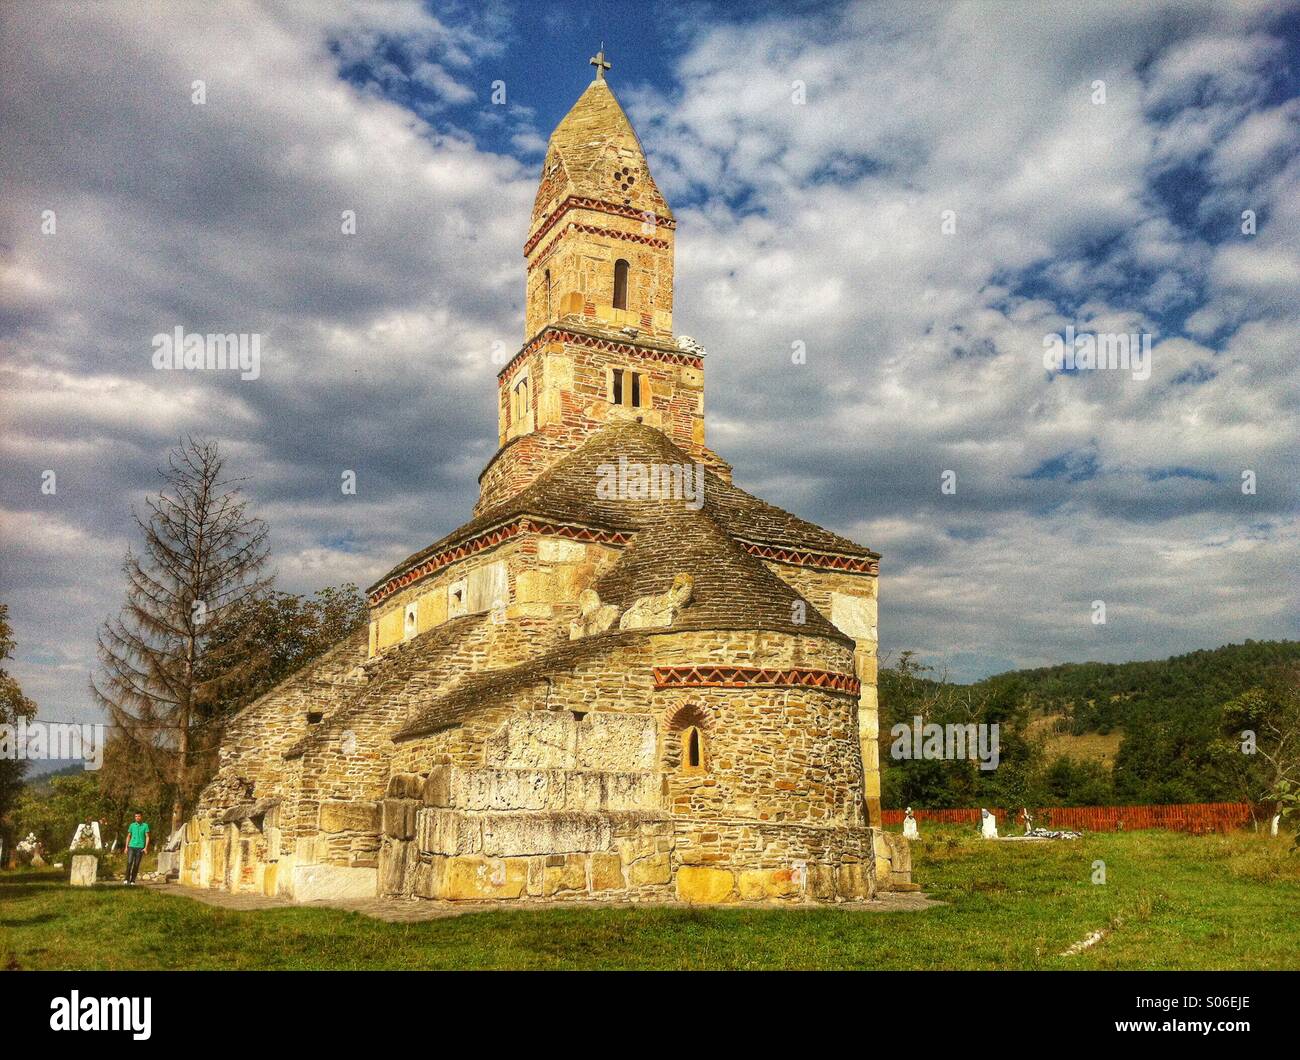 Densus iglesia, también conocida como la iglesia de San Nicolás, es una de las más antiguas iglesias rumanas todavía sigue en pie (siglo VII) Foto de stock